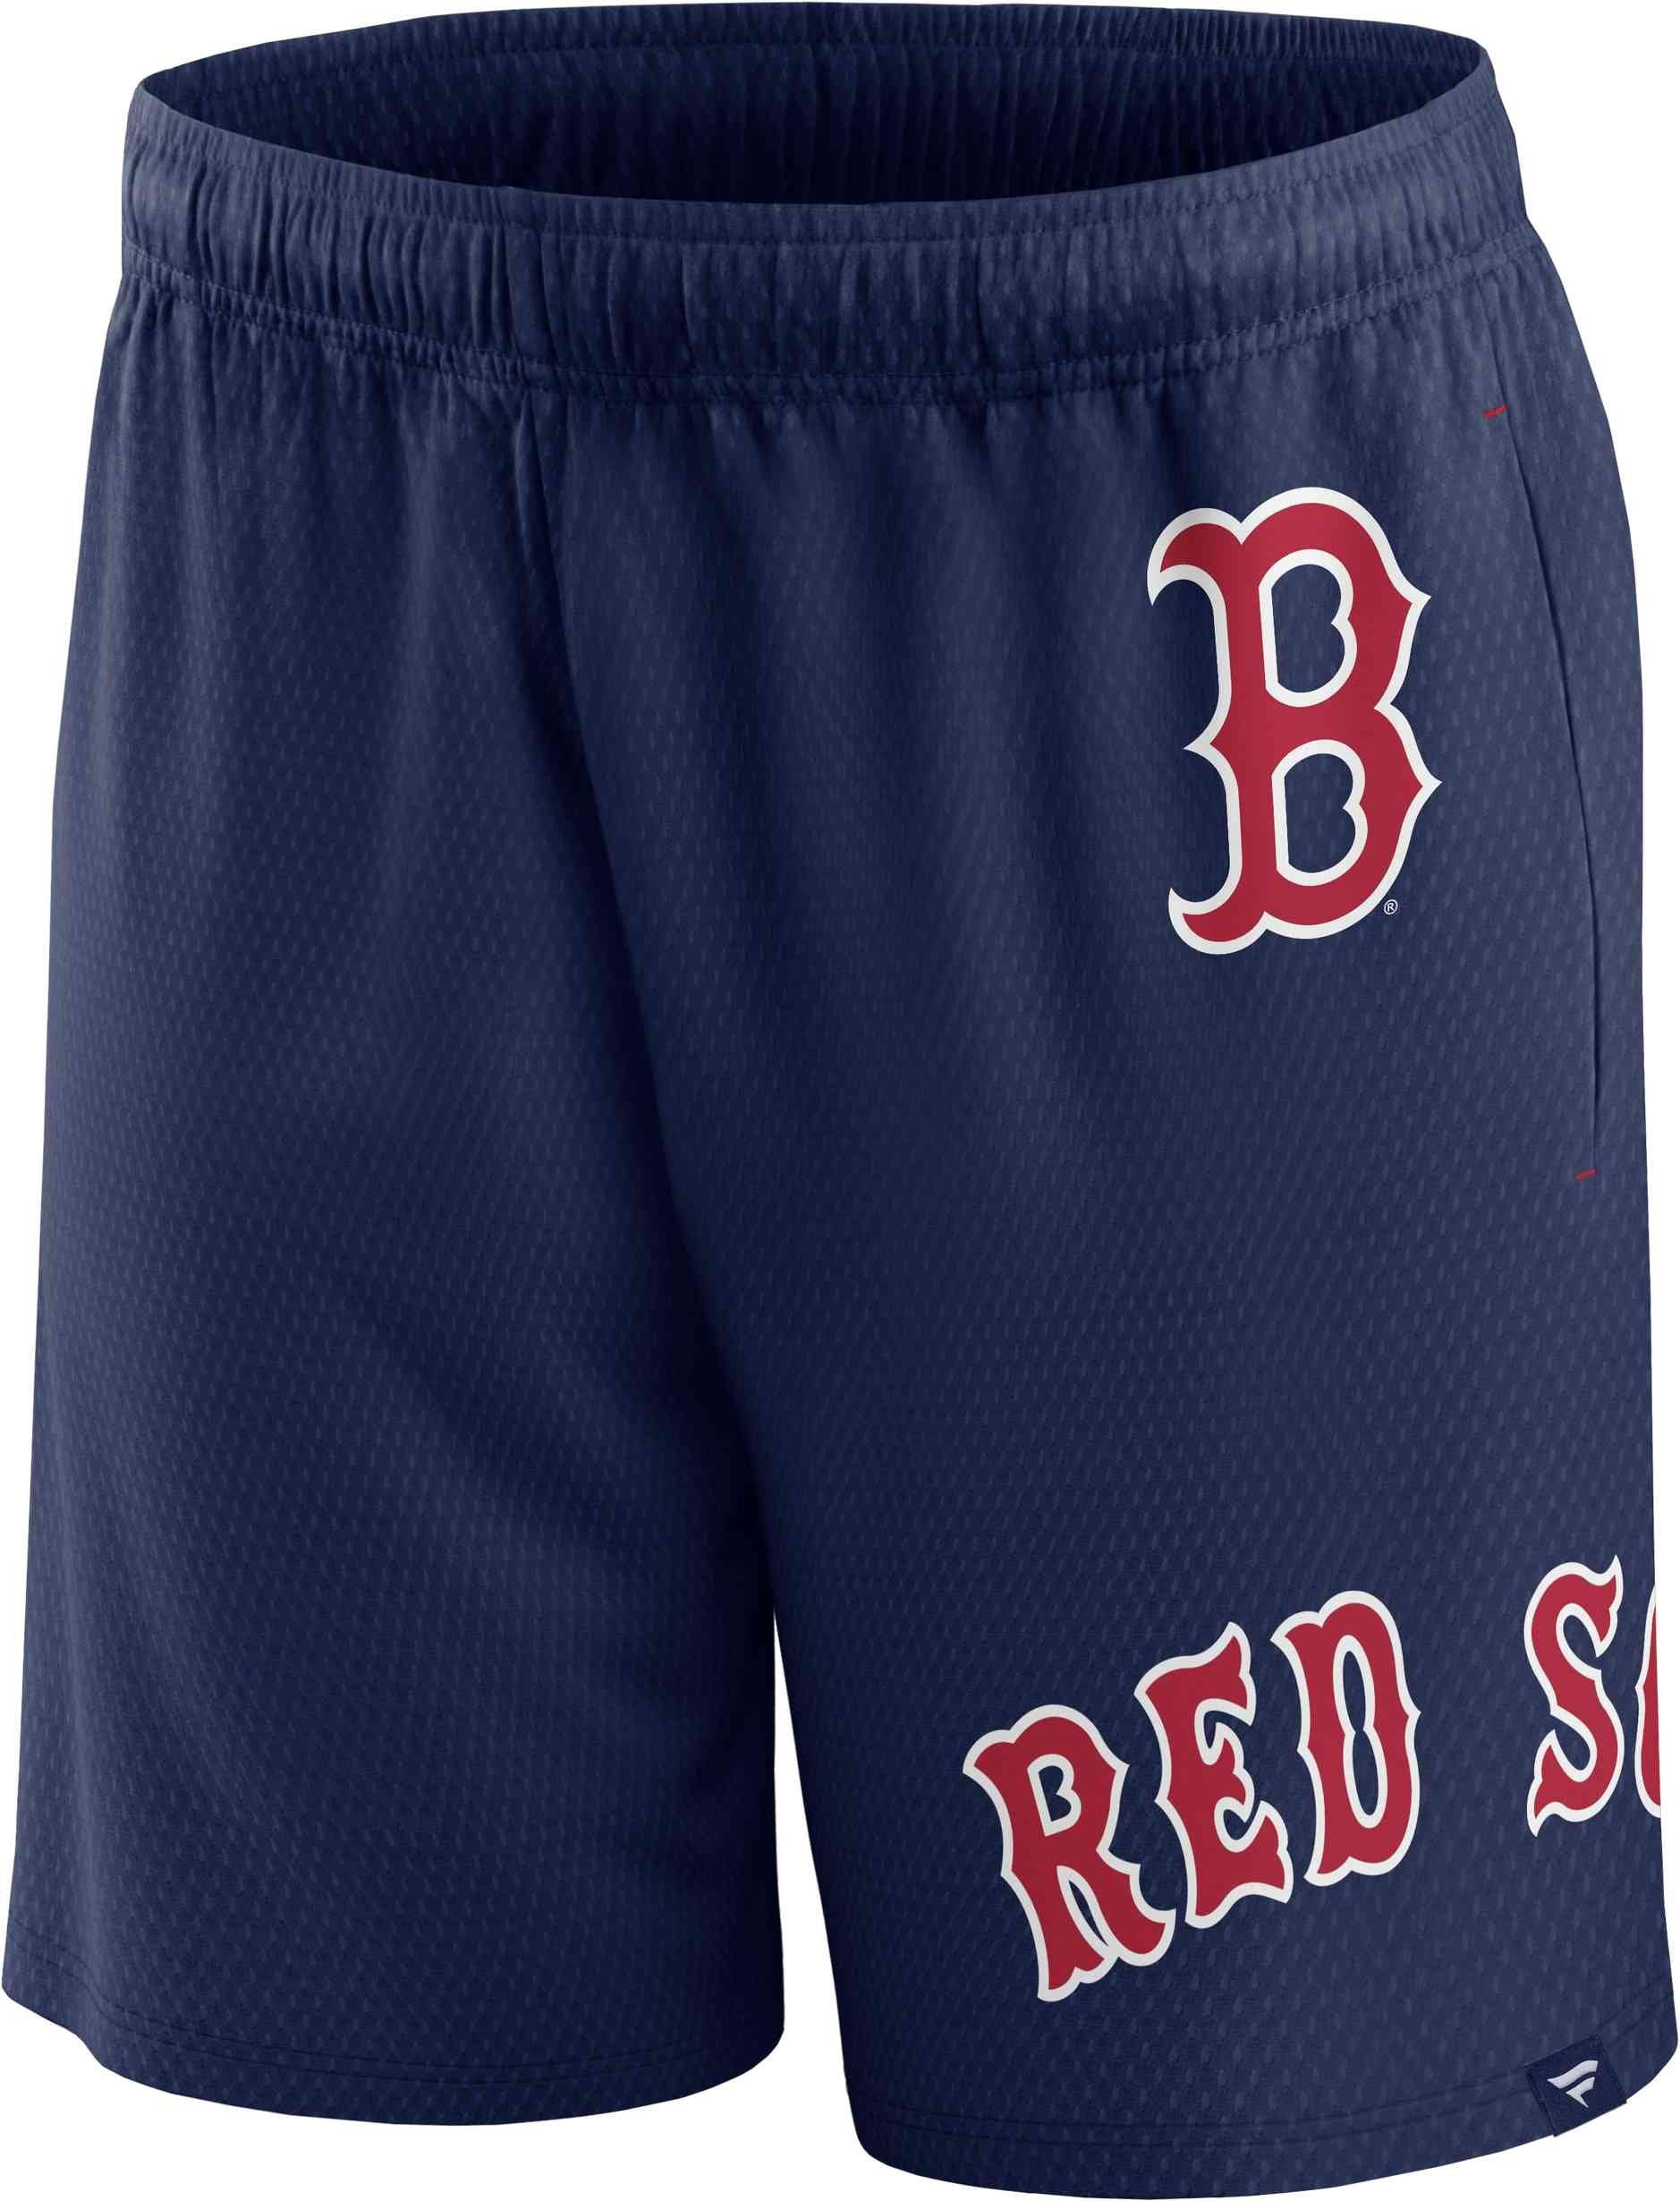 Fanatics Shorts MLB Boston Red Sox Mesh